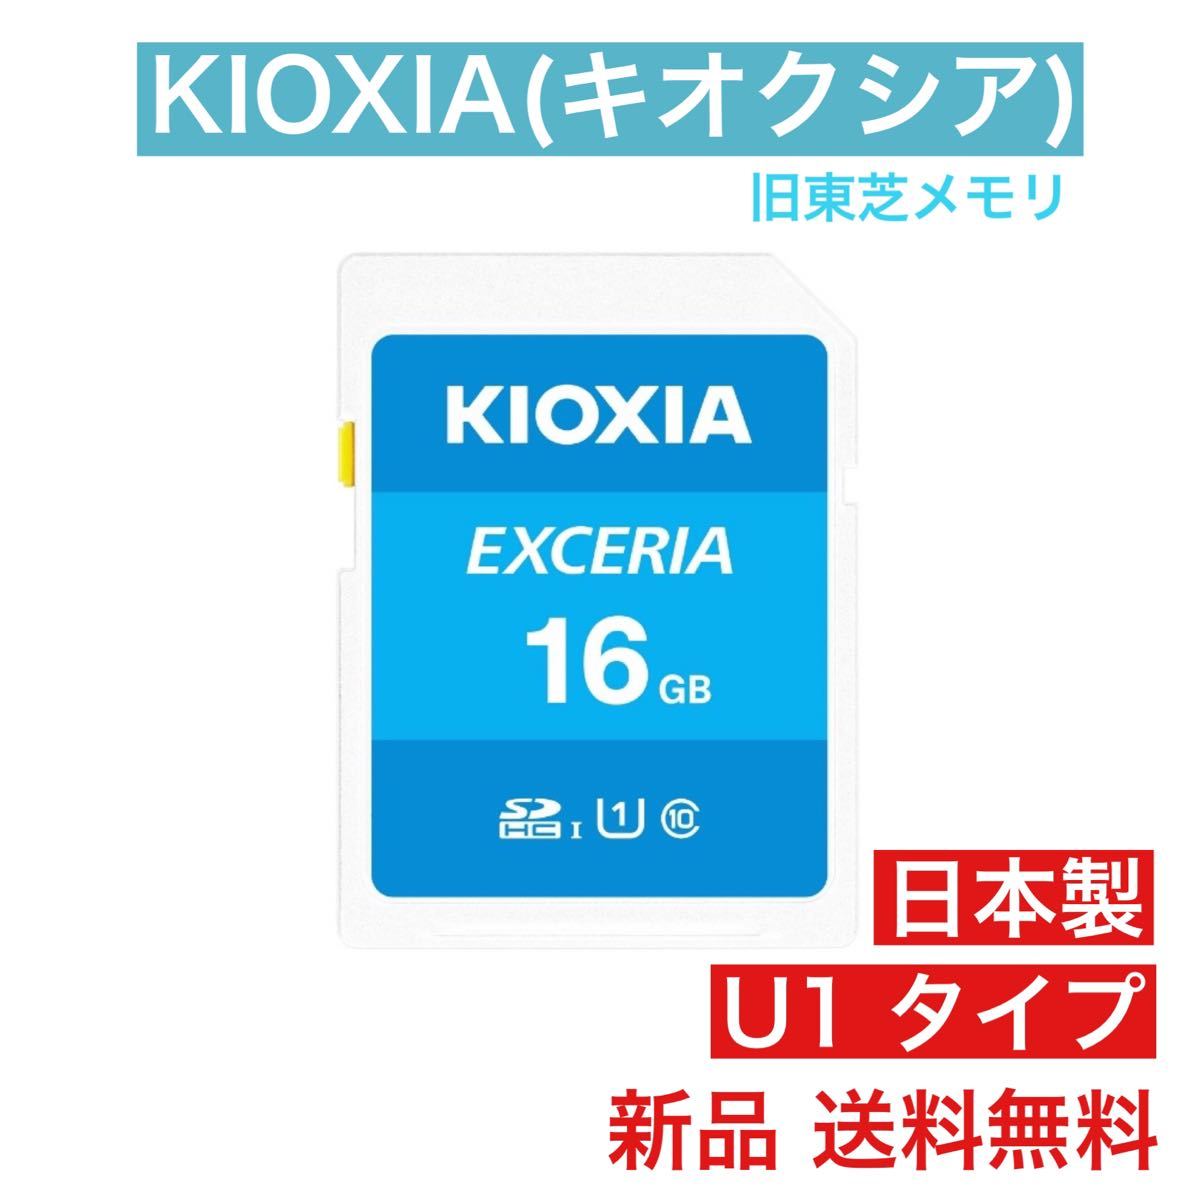 KIOXIA(キオクシア) SDカード 16GB 国内正規品 旧東芝 SDHC 旧東芝メモリ